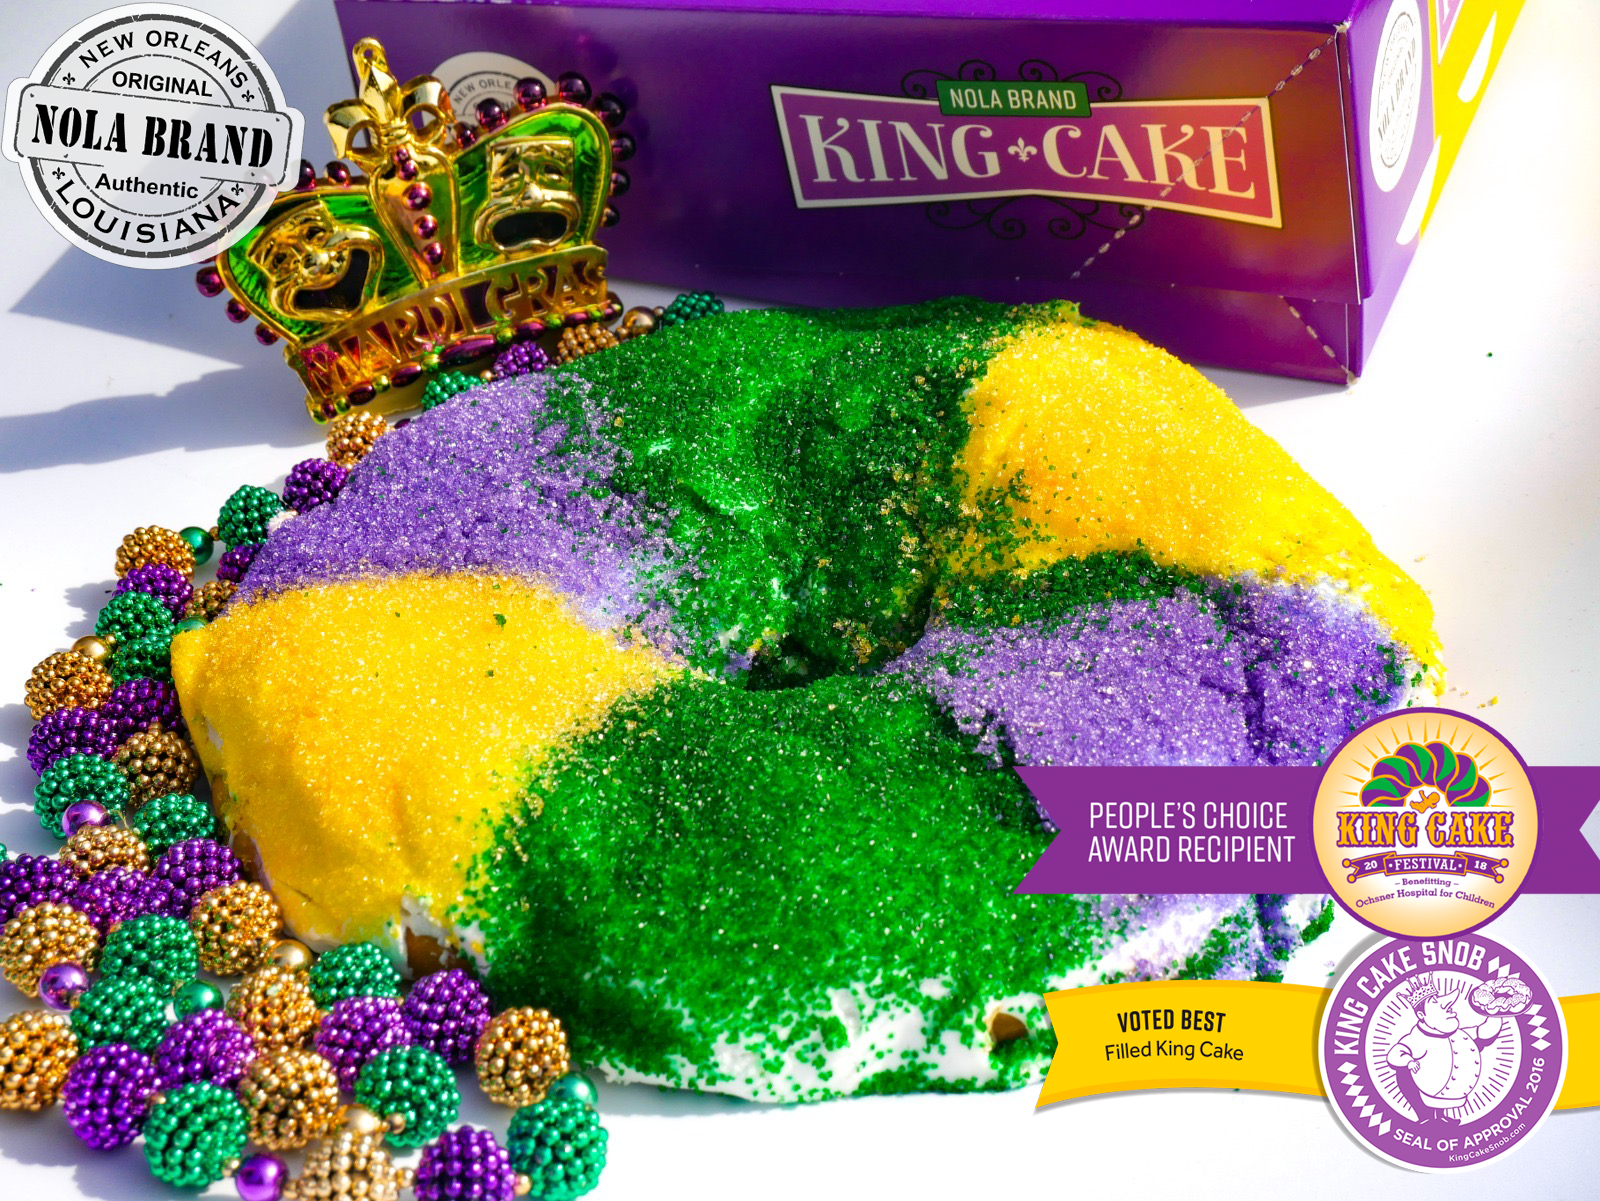 NOLA BRAND King Cake